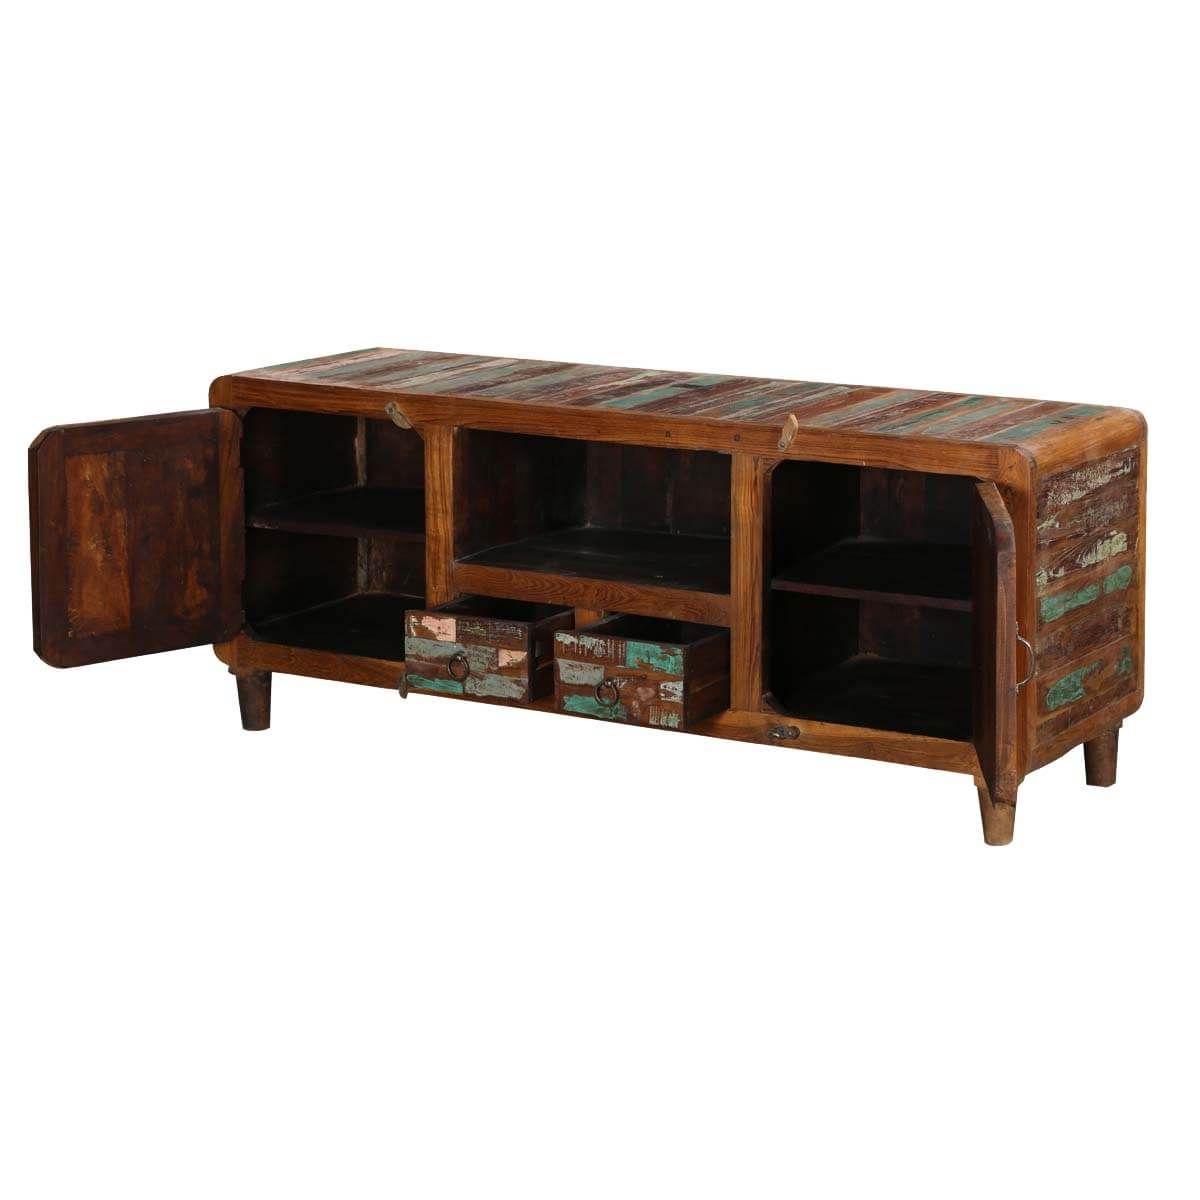 Trendy Tangier 59" Mosaic 2 Door Solid Wood Rustic Media Console Furniture In 2 Door Wood Desks (View 7 of 15)